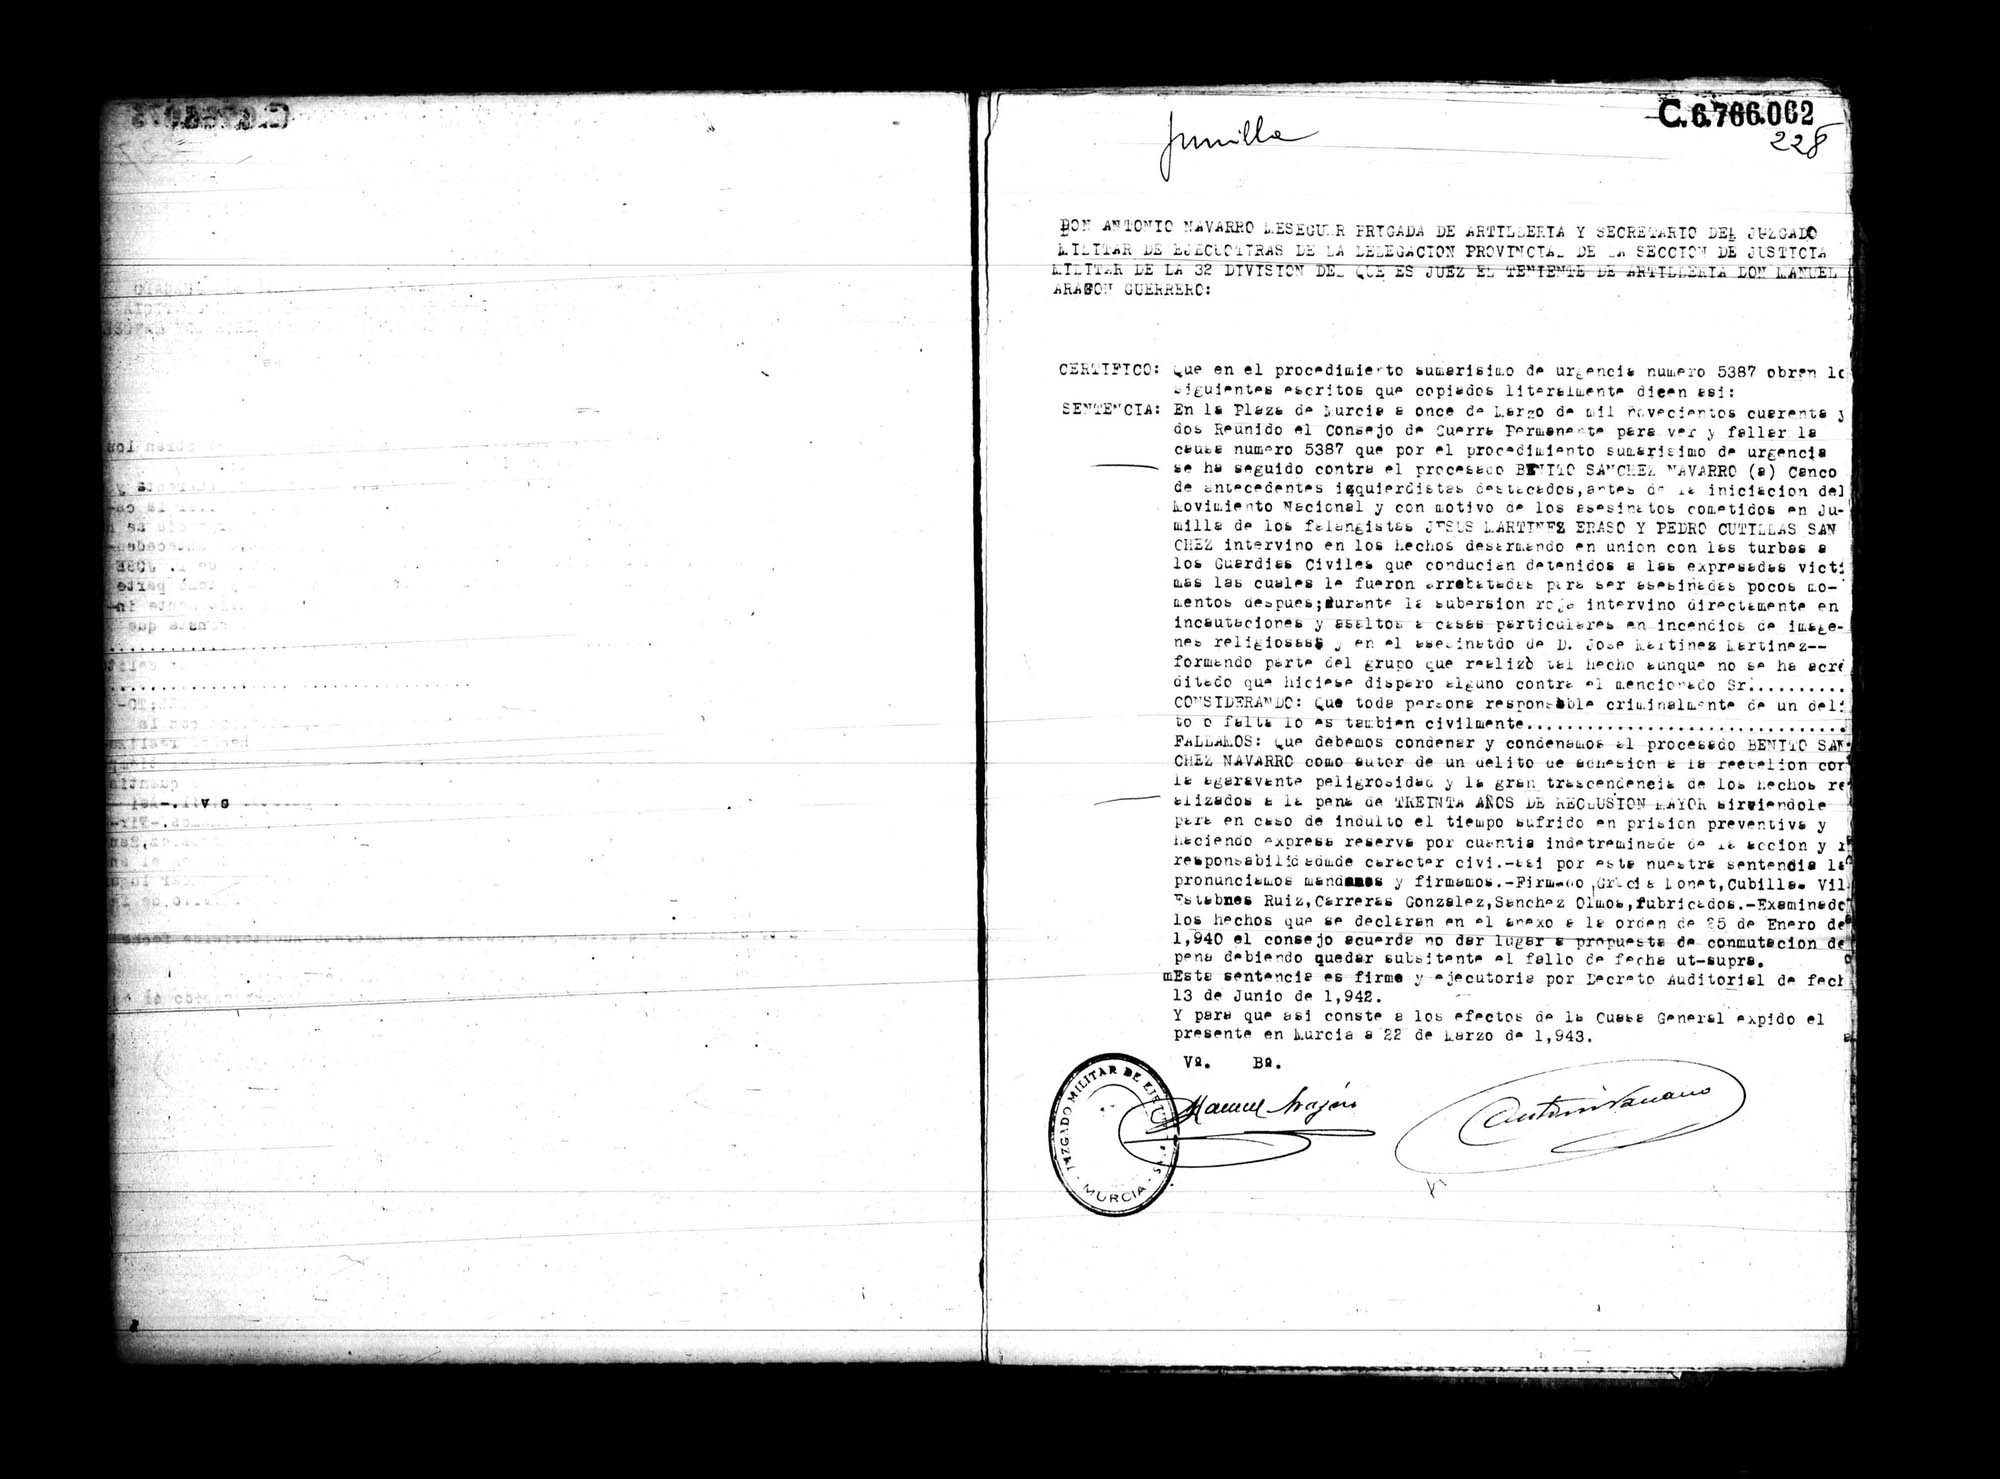 Certificado de la sentencia pronunciada contra Benito Sánchez Navarro, causa 5387, el 11 de marzo de 1942 en Murcia.